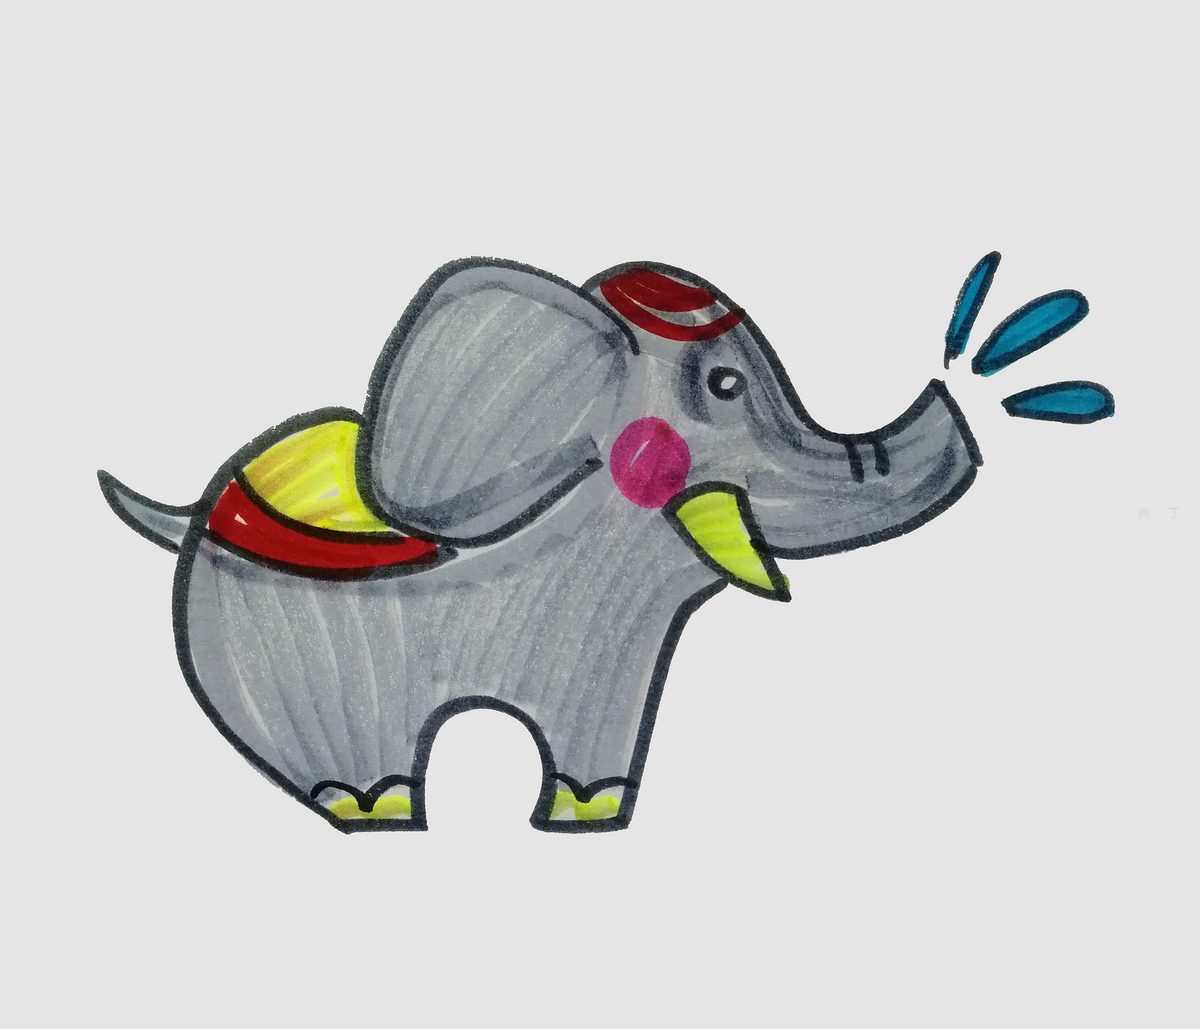 可爱的大象简笔画 教你画幼儿简单的简笔画 肉丁儿童网